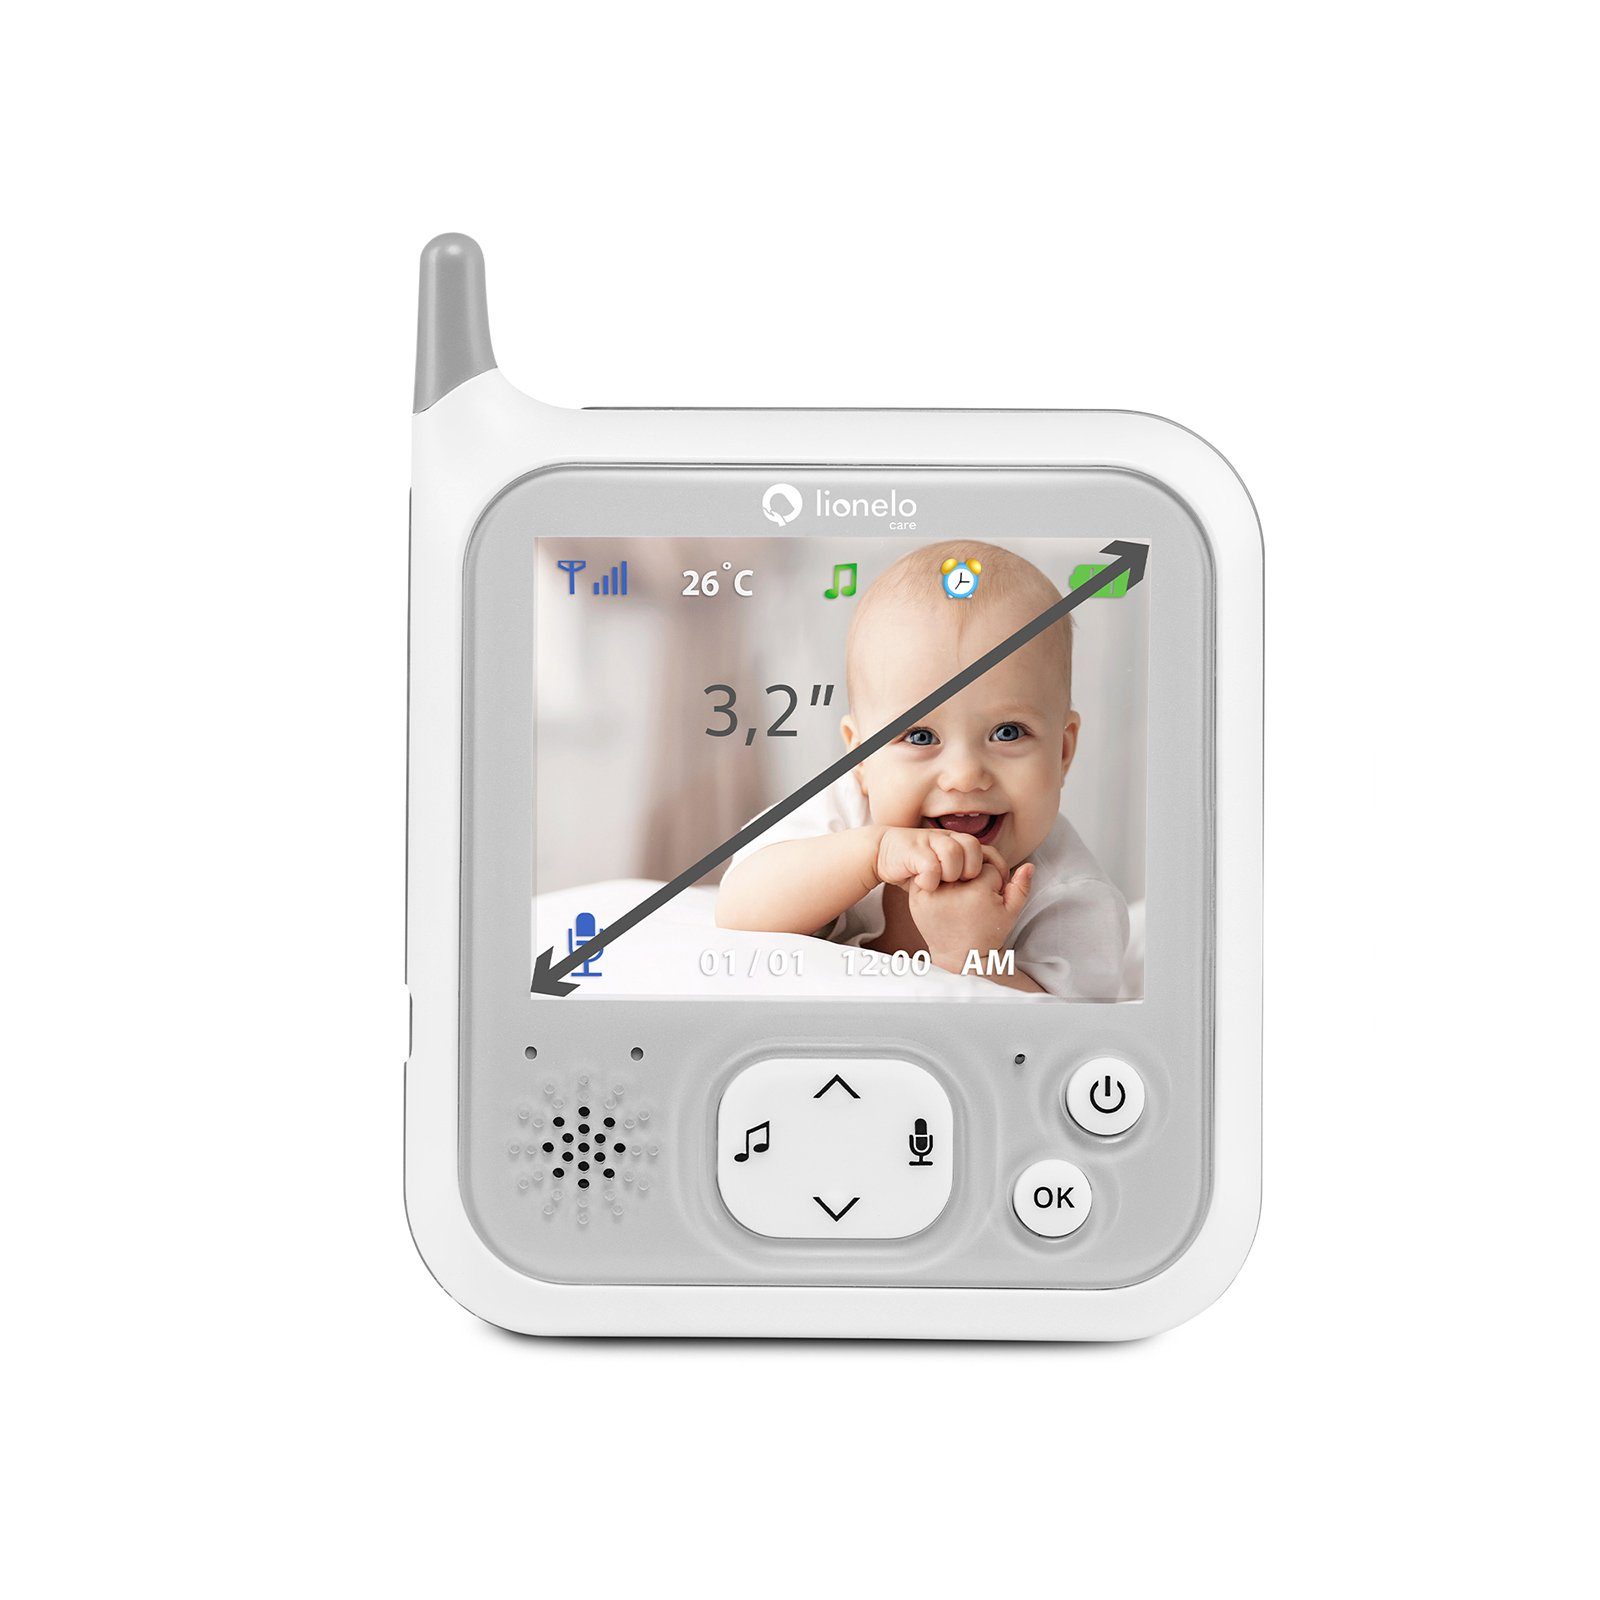 lionelo Babyphone 40 7.1, Babyline Stunden temperaturfühler VOX-System reichweite 260m